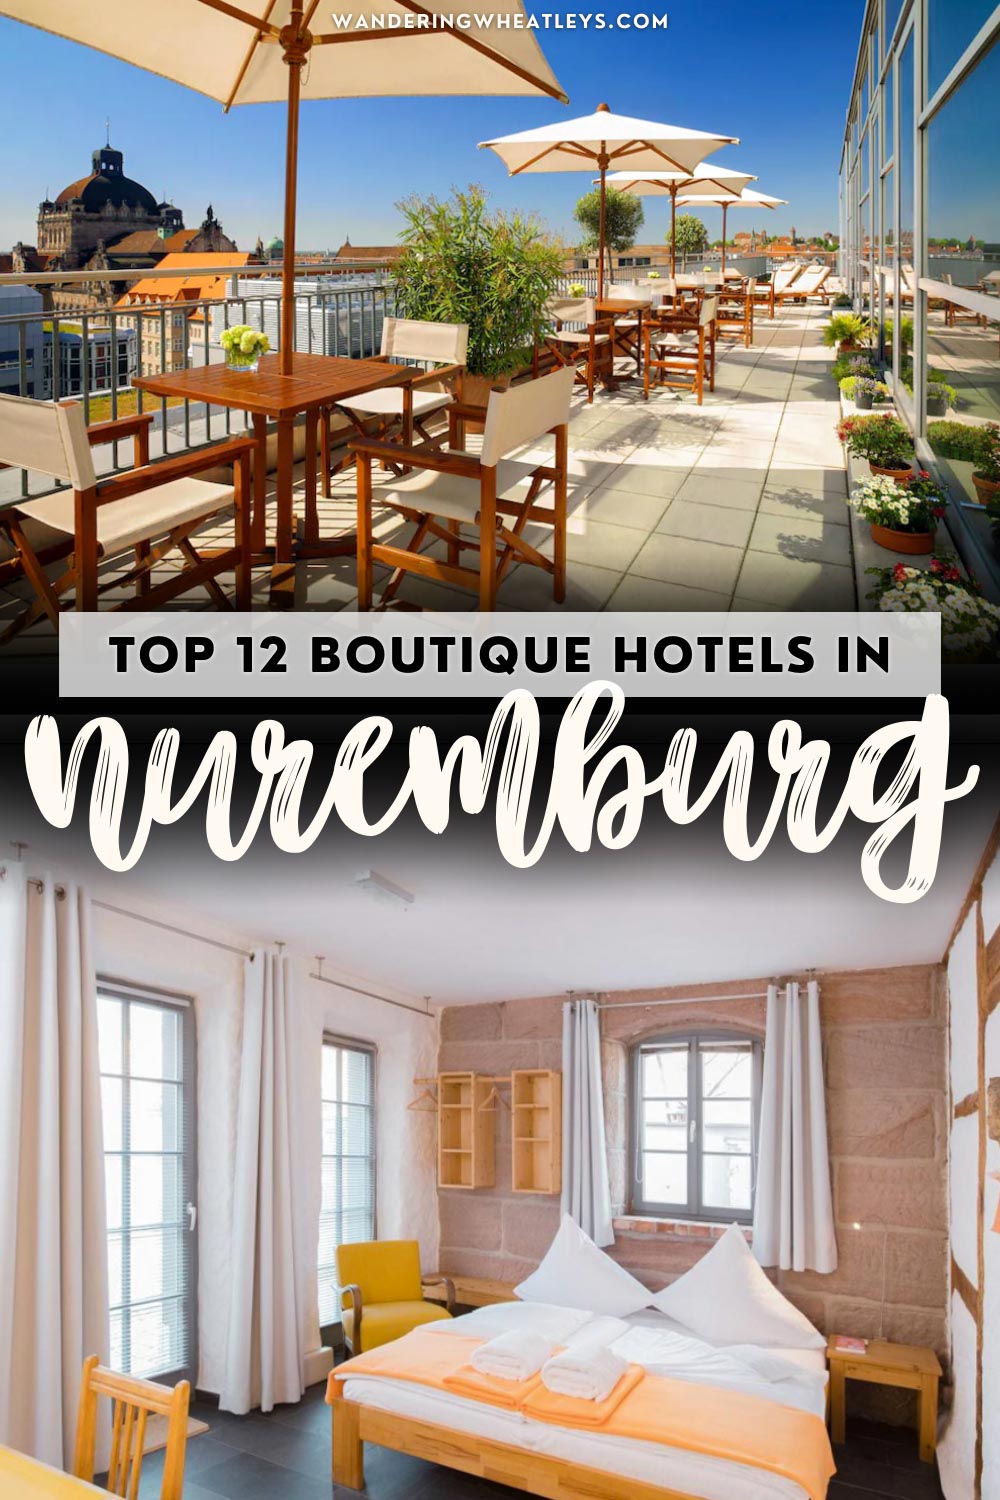 The Best Hotels in Nuremberg, Germany